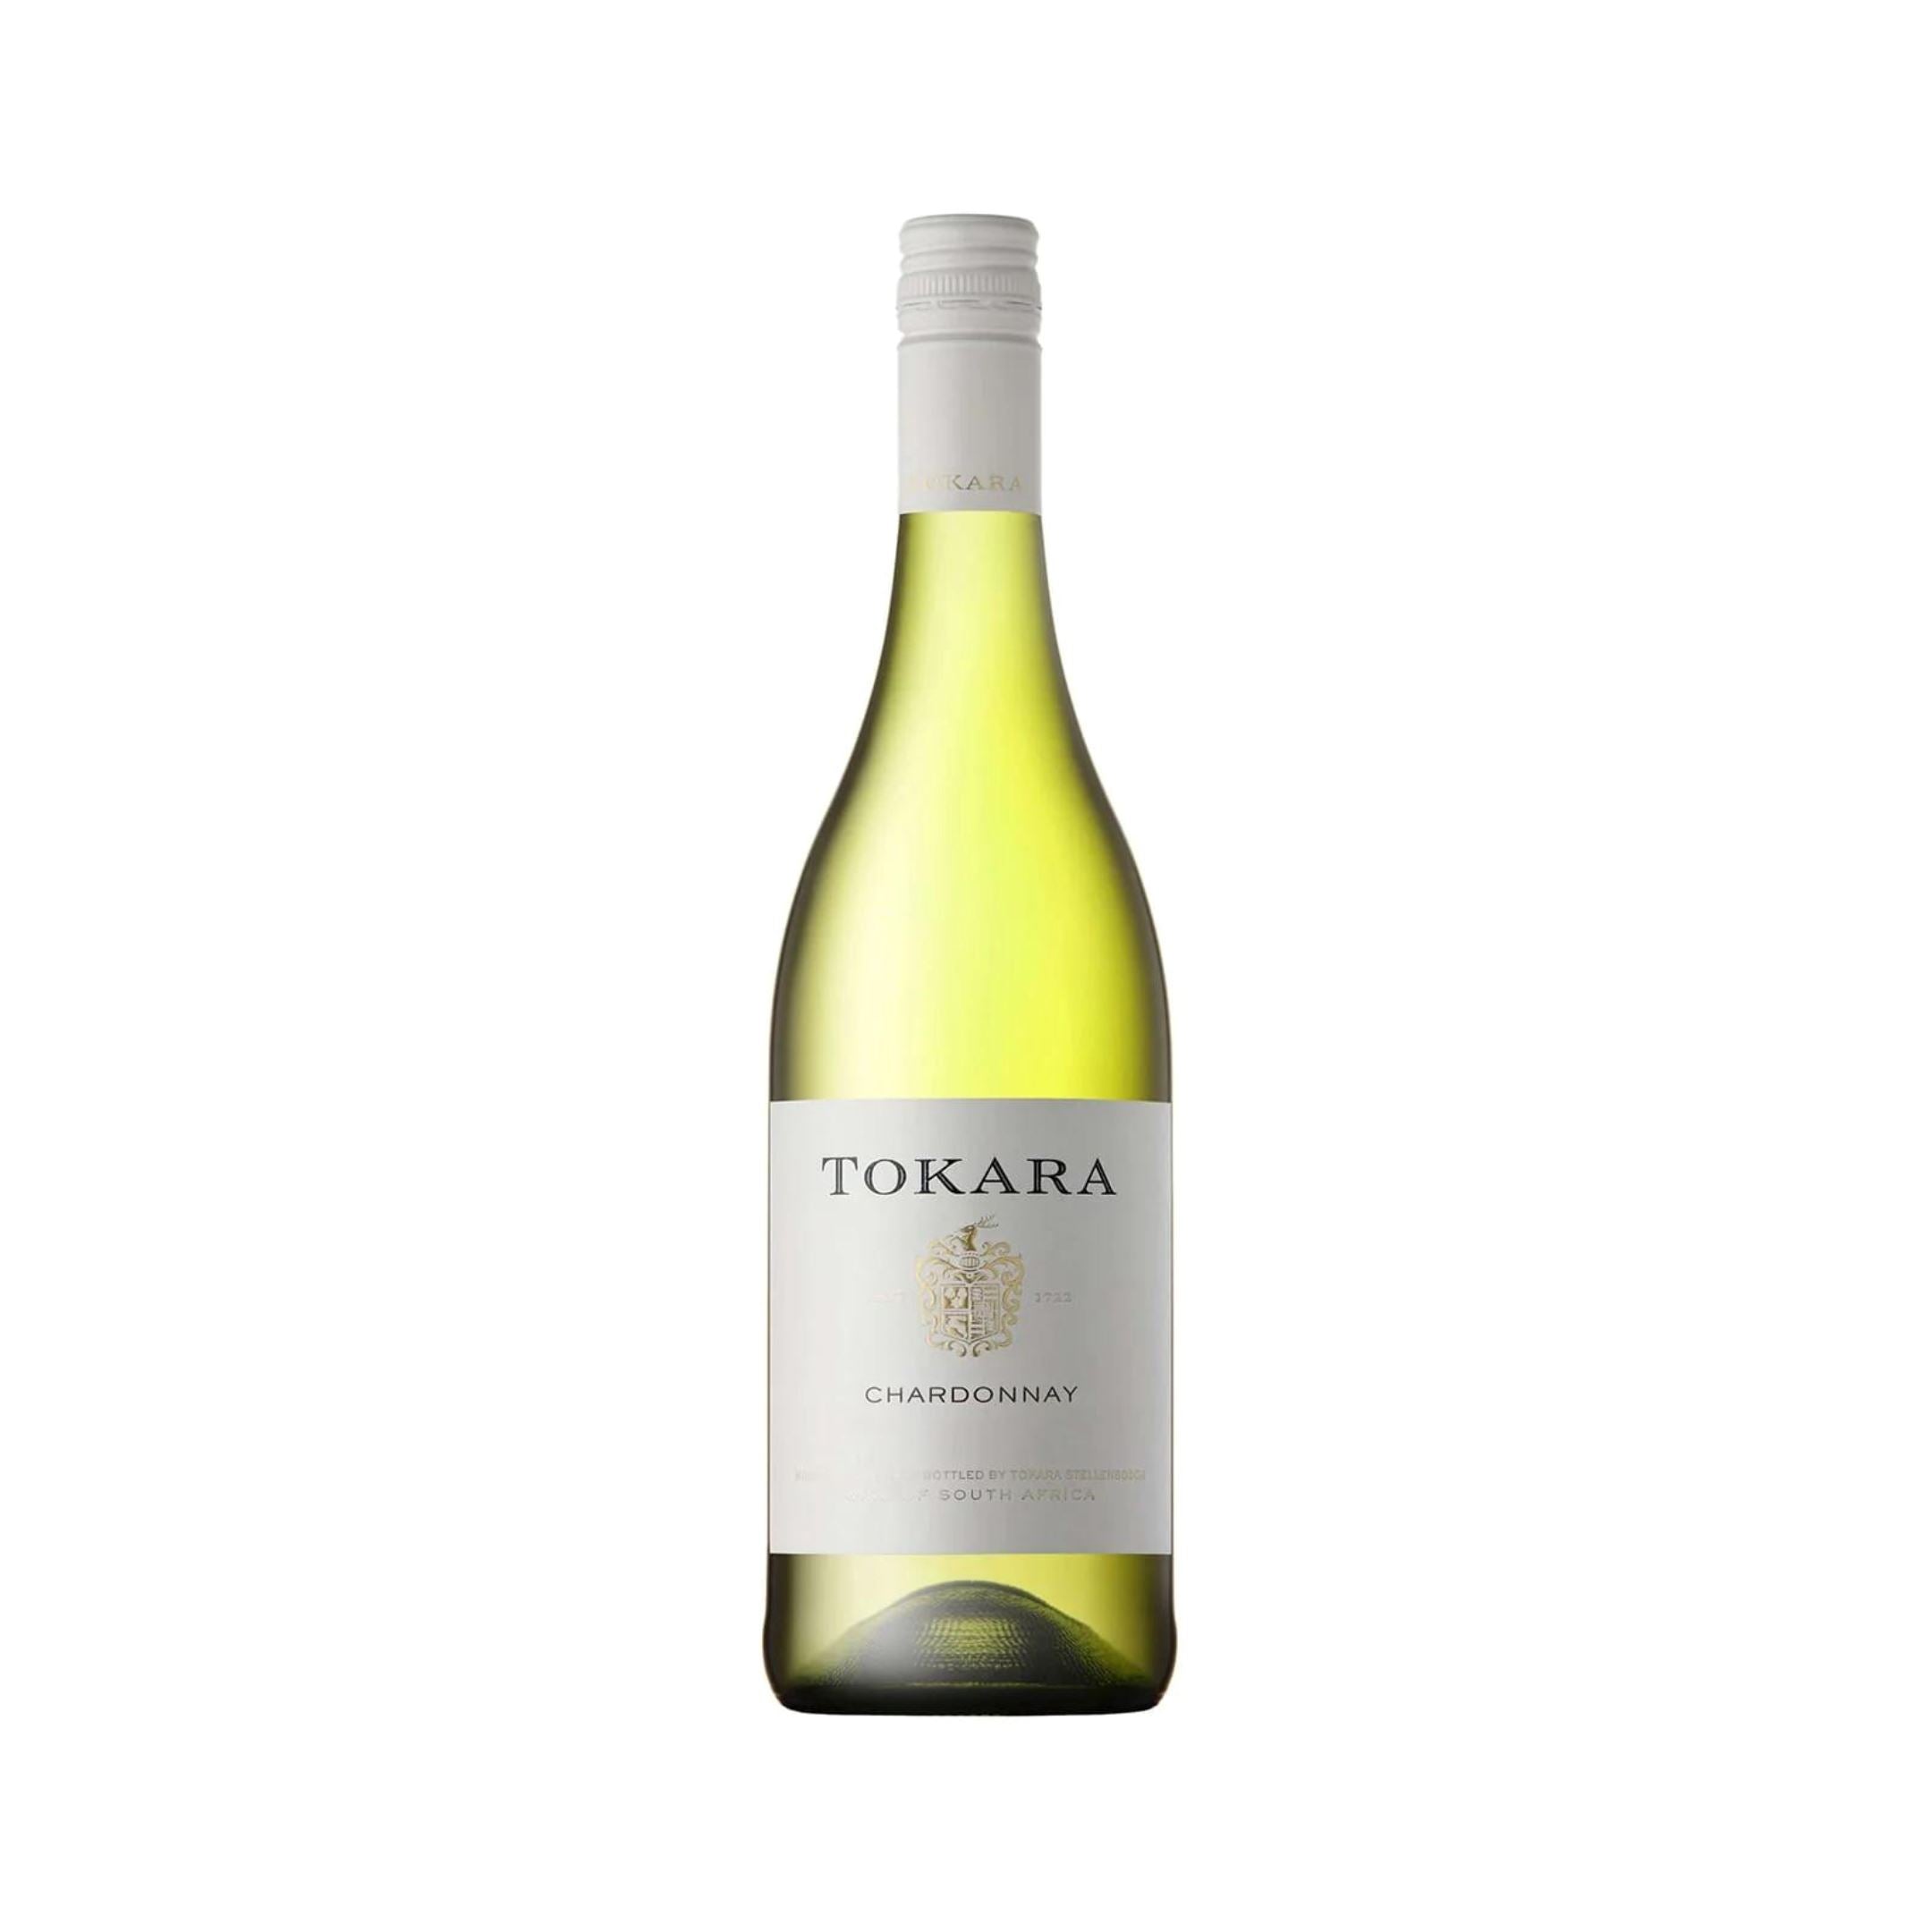 Tokara, Chardonnay, Stellenbosch, South Africa Wine Bottle ABS 